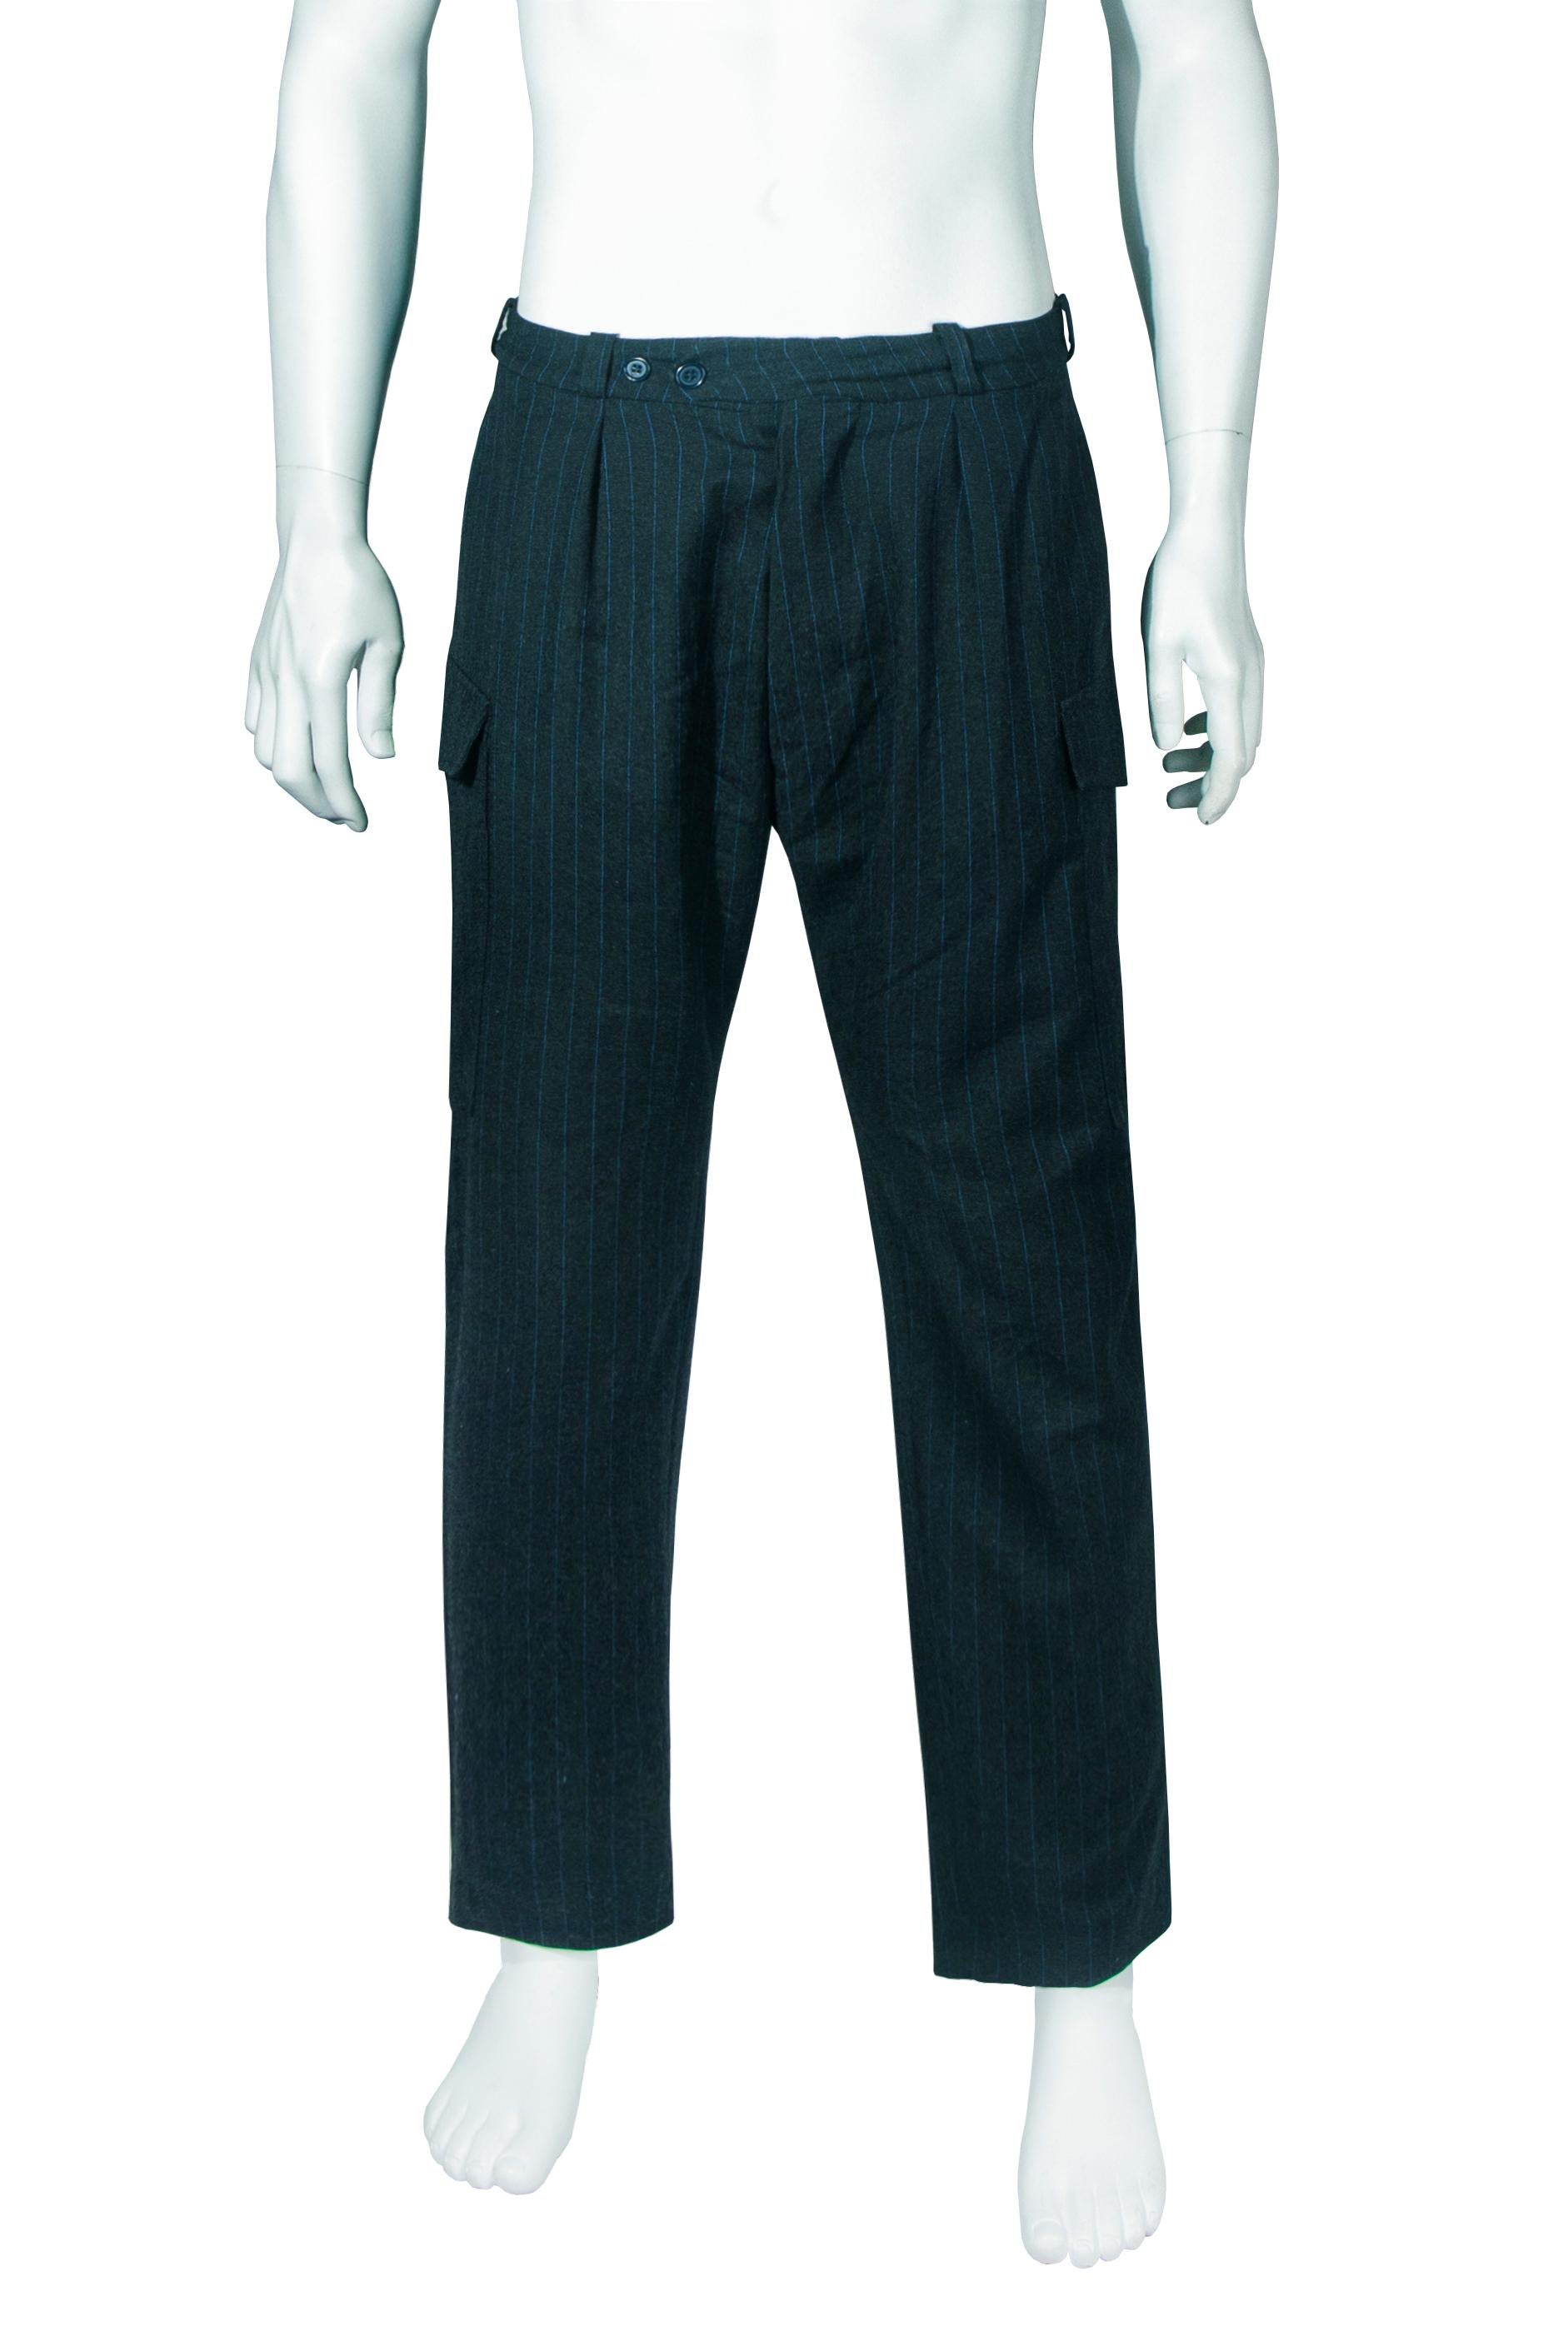 Pantalon cargo à rayures bleues pour homme, automne-hiver 1997, Alexander McQueen 'It's a Jungle Out There'. Porté dans le look 24, ce vêtement est un exemple rare des premiers vêtements masculins de McQueen et de sa formation à Saville Row. Les